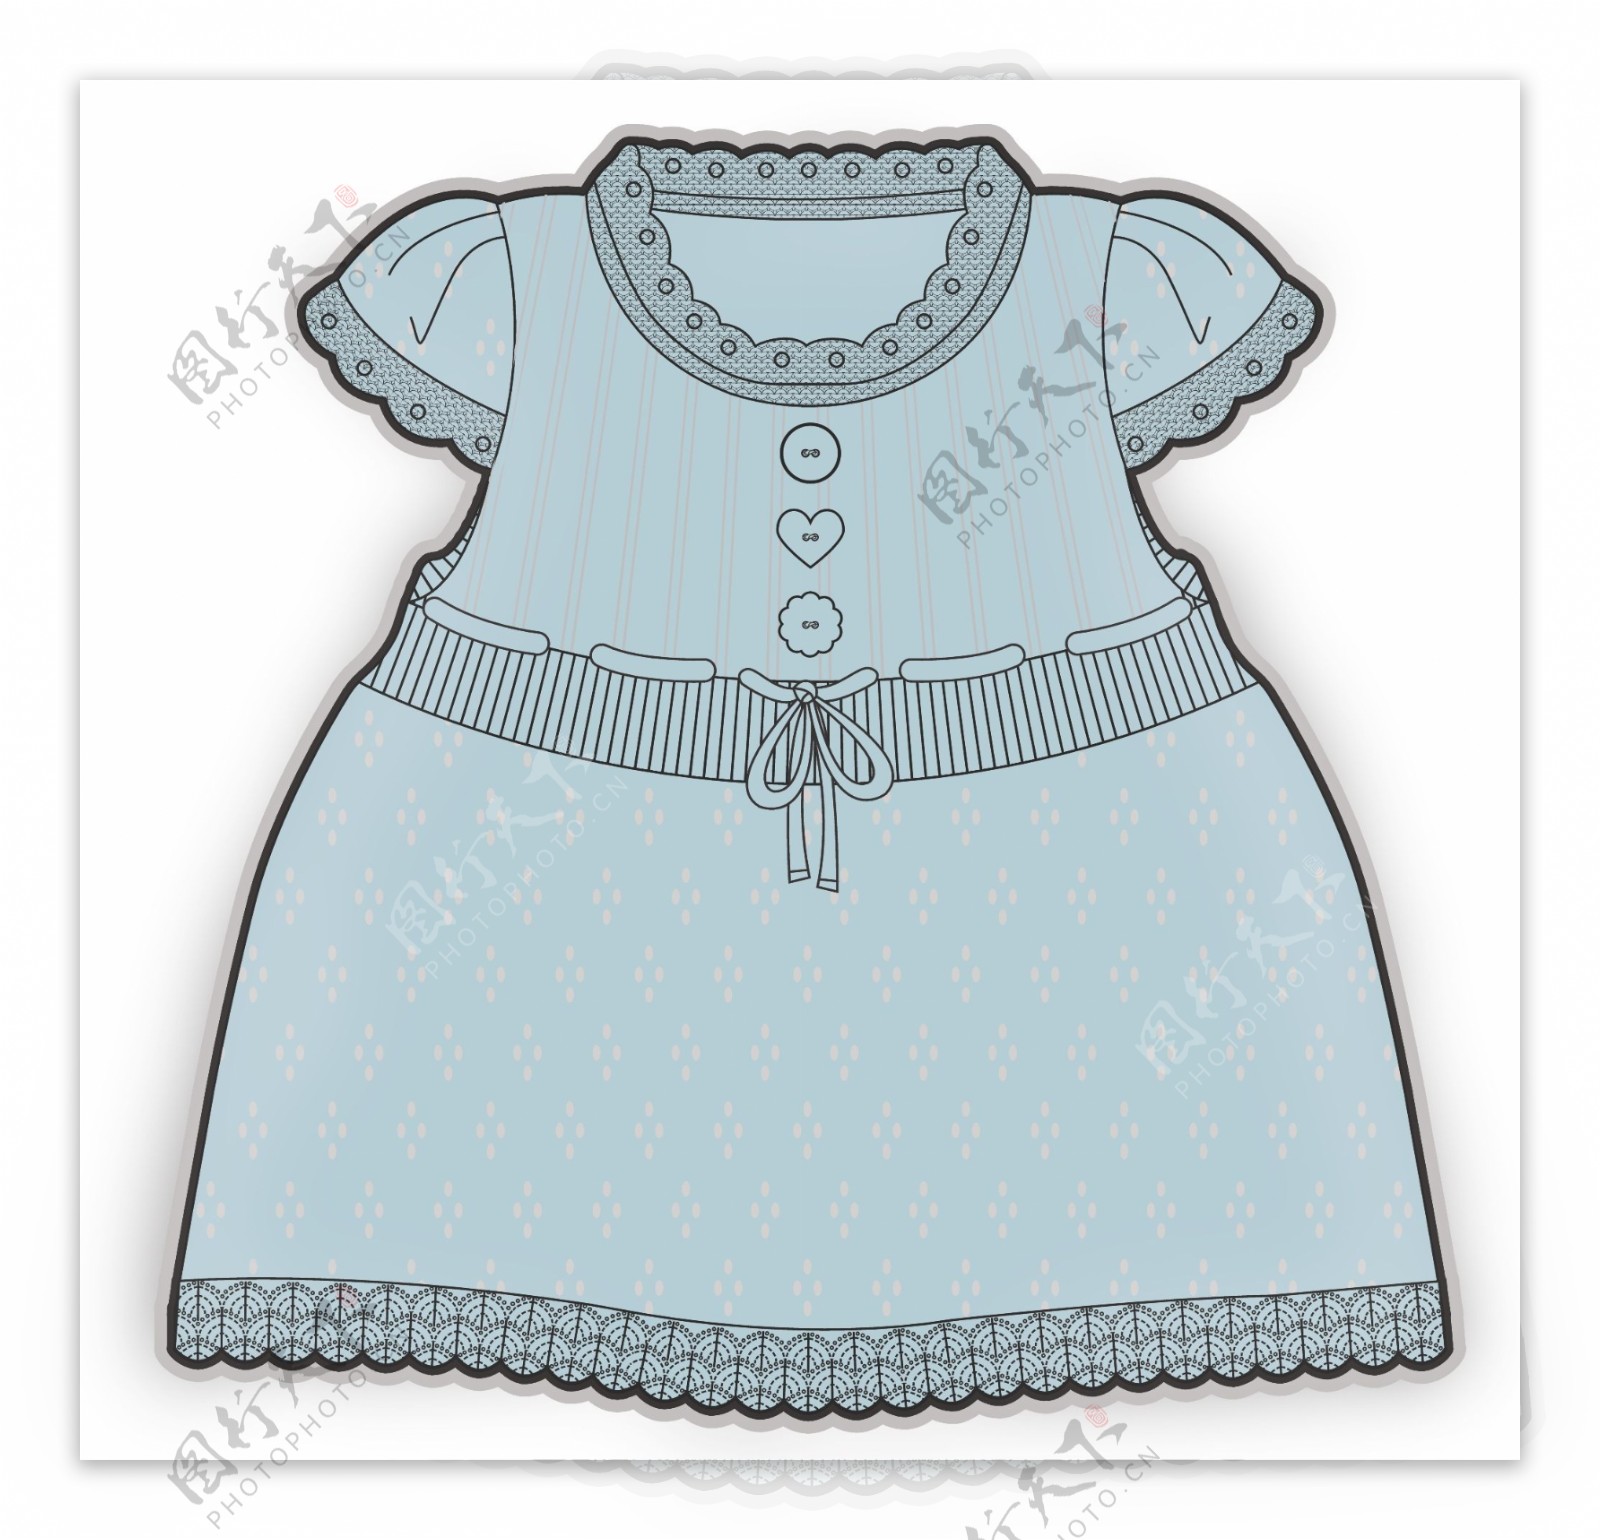 蓝色公主裙彩色服装设计原稿矢量素材